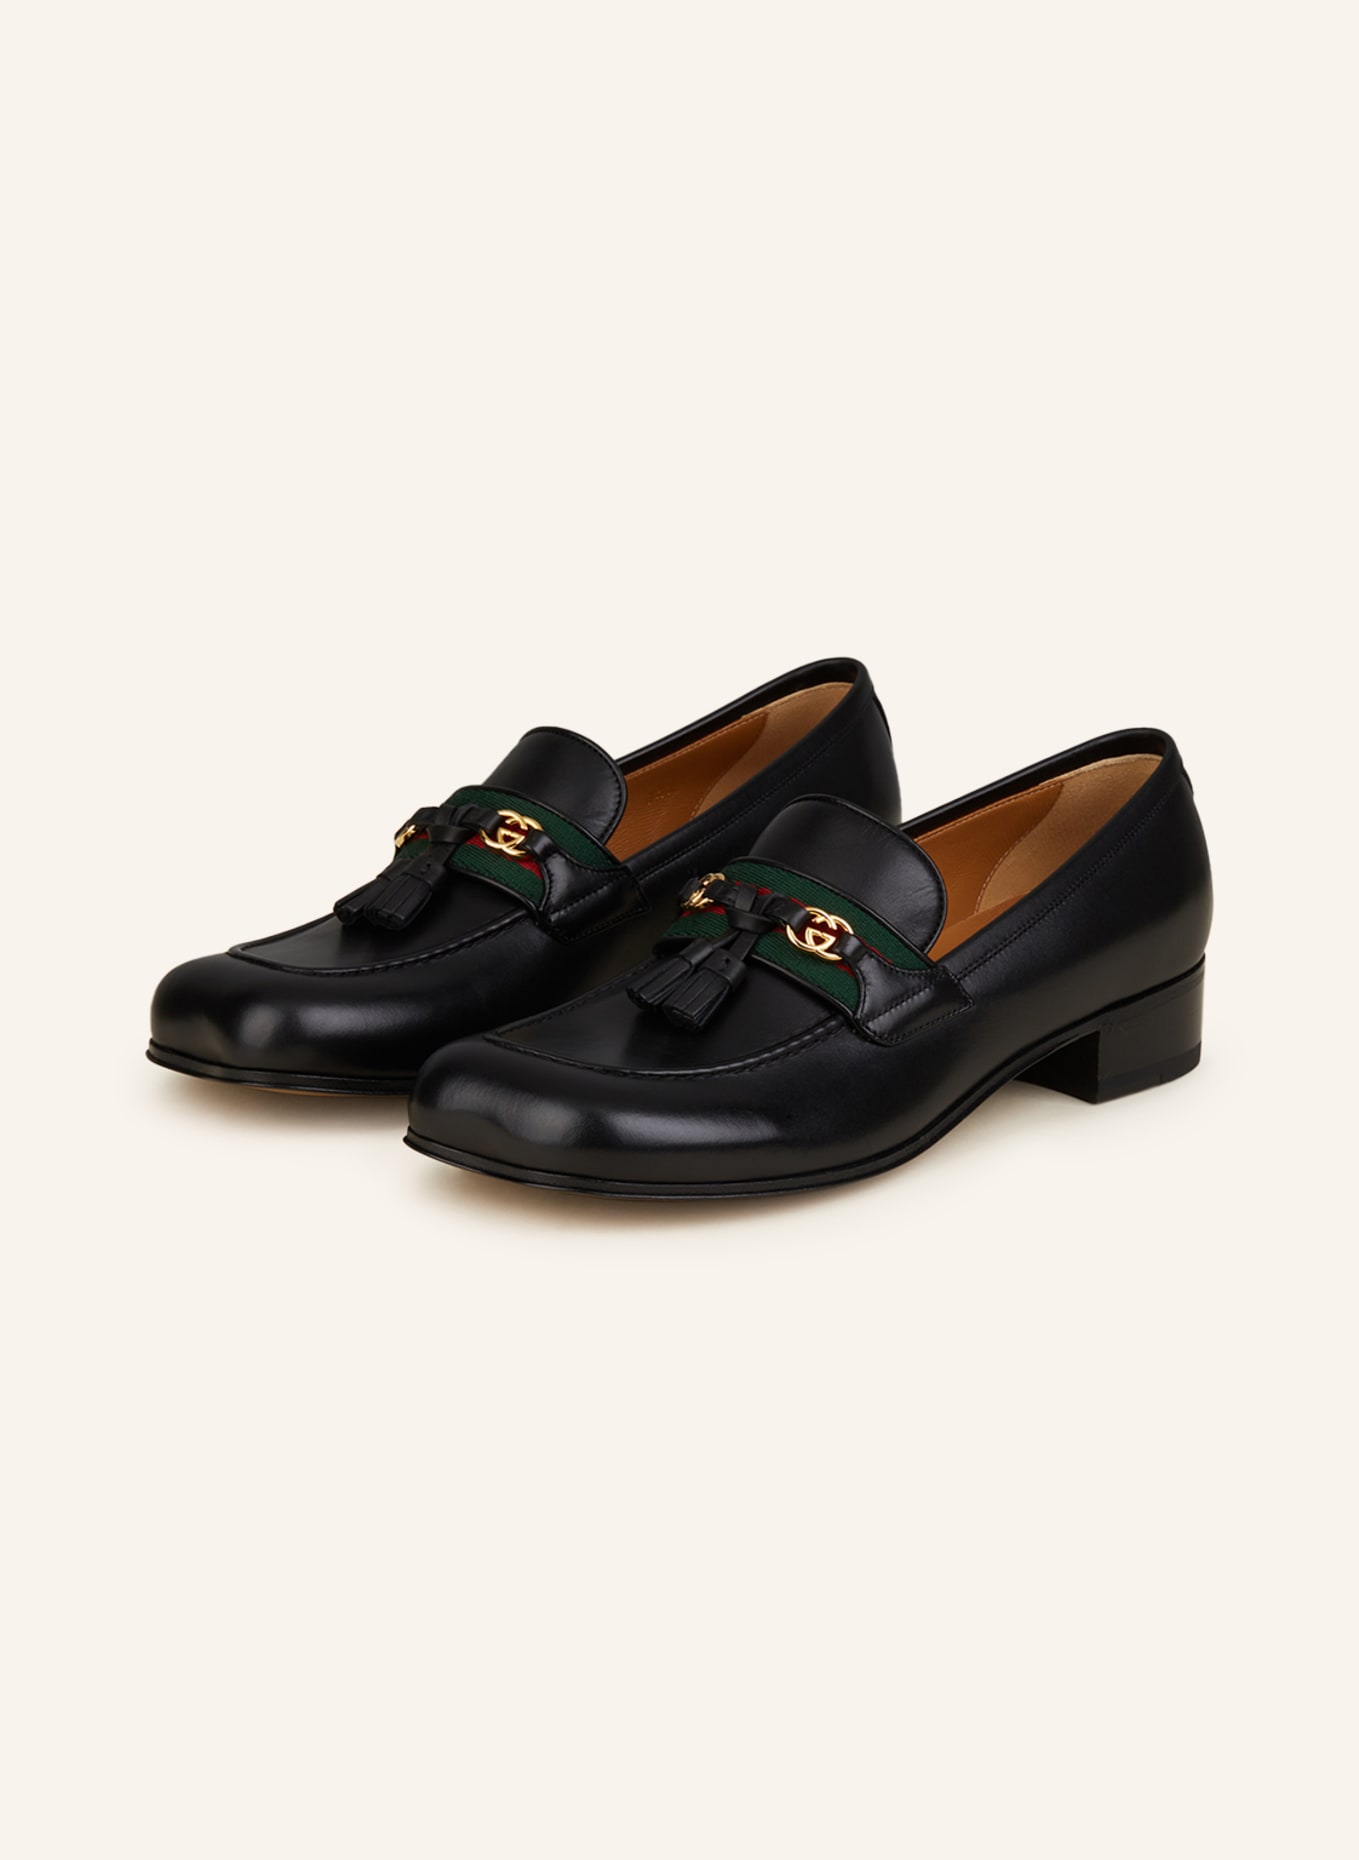 GUCCI Loafers, Color: 1066 BLACK/VRV (Image 1)